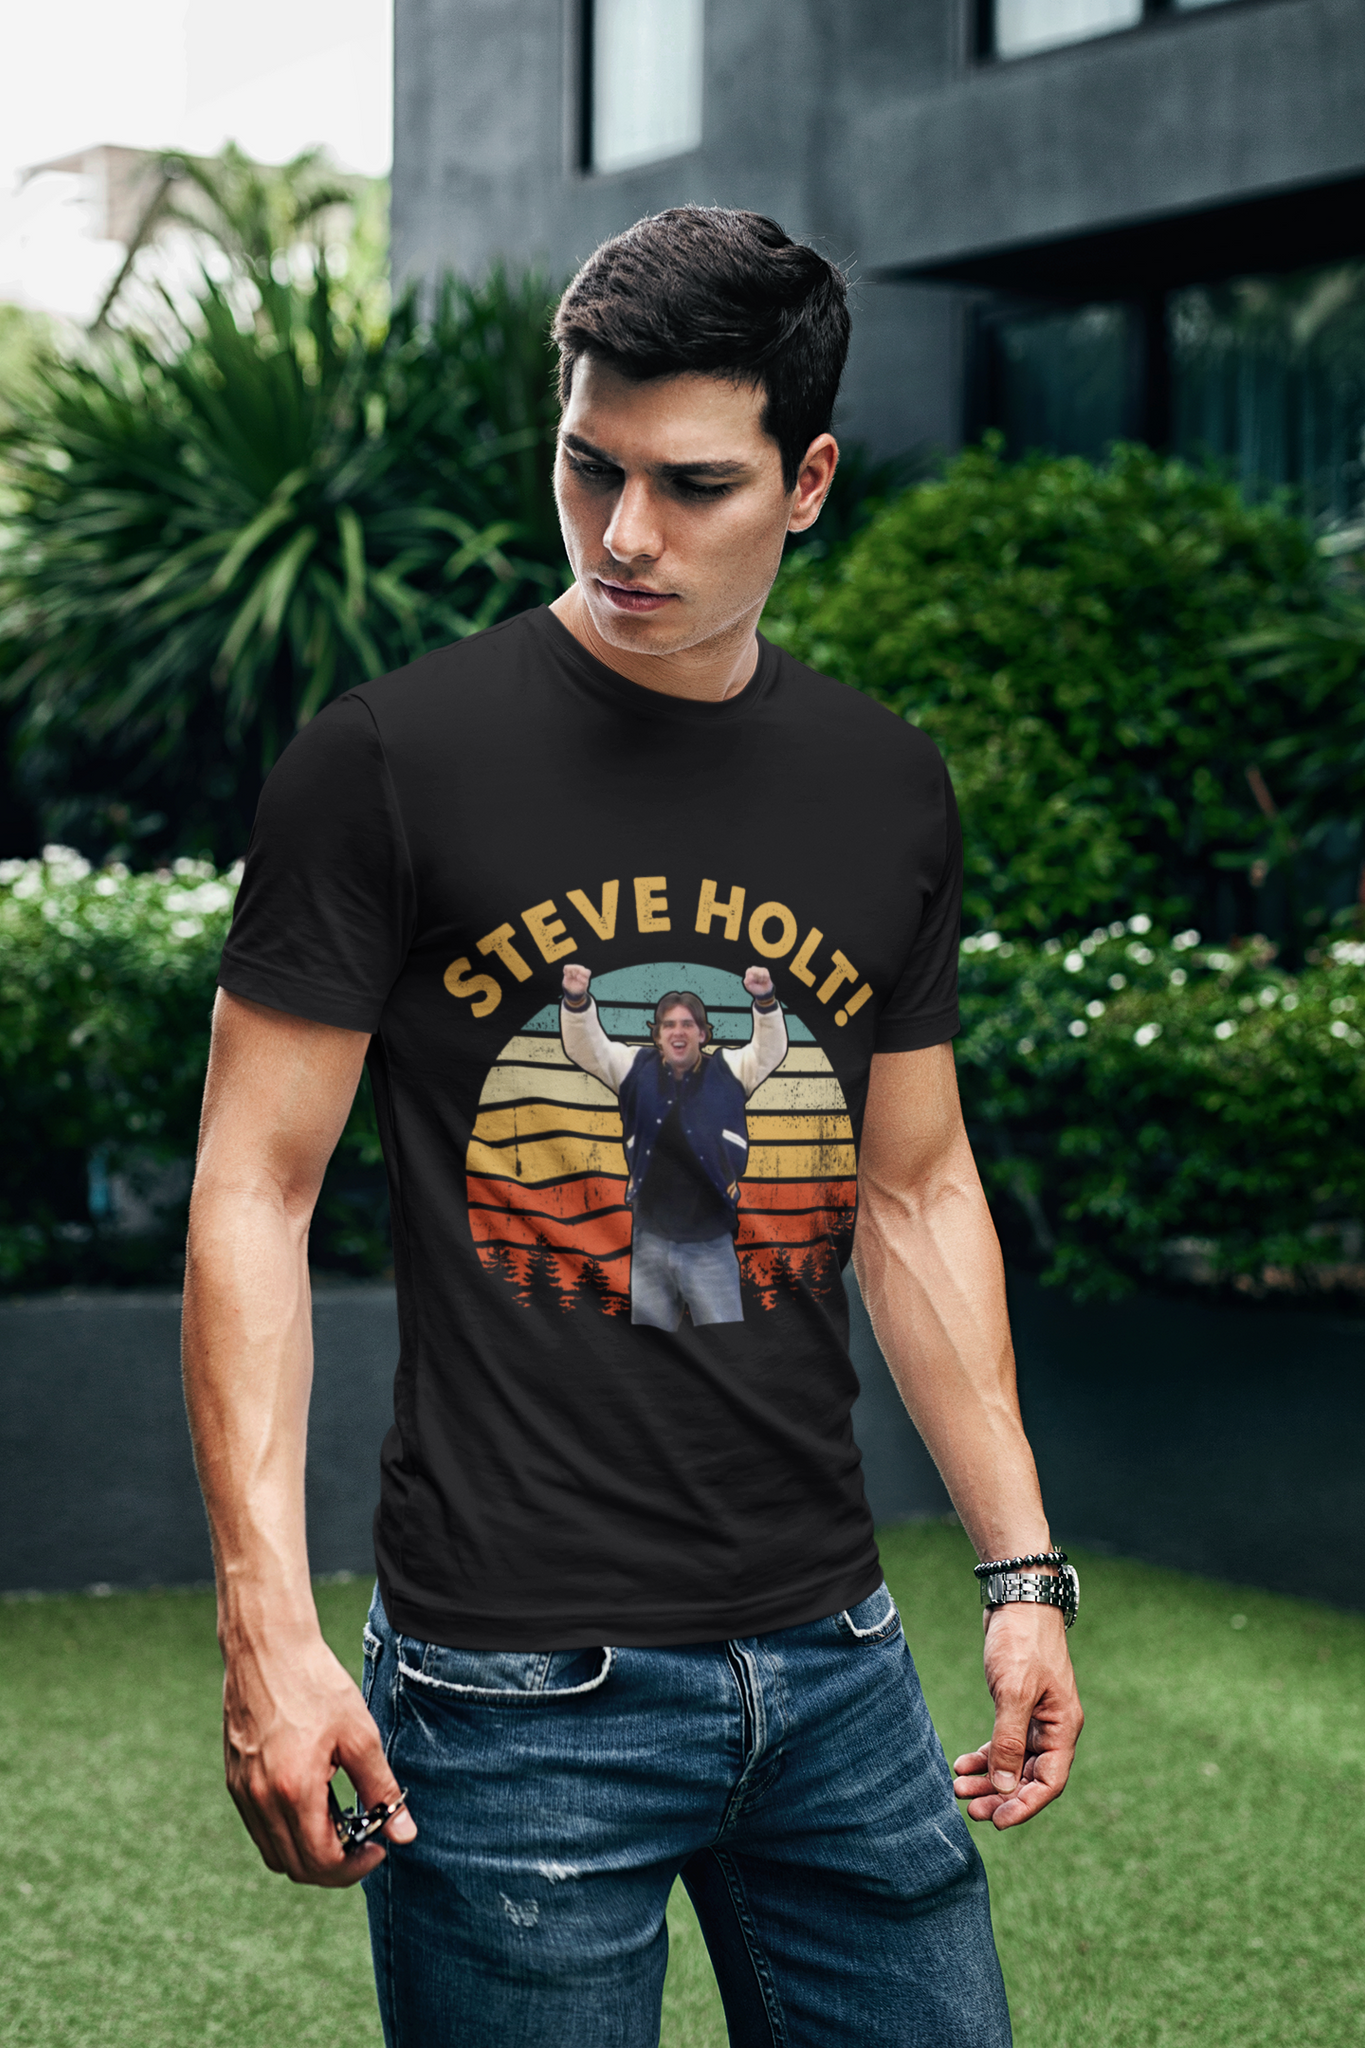 Arrested Development Sitcom T Shirt, Steve Holt T Shirt